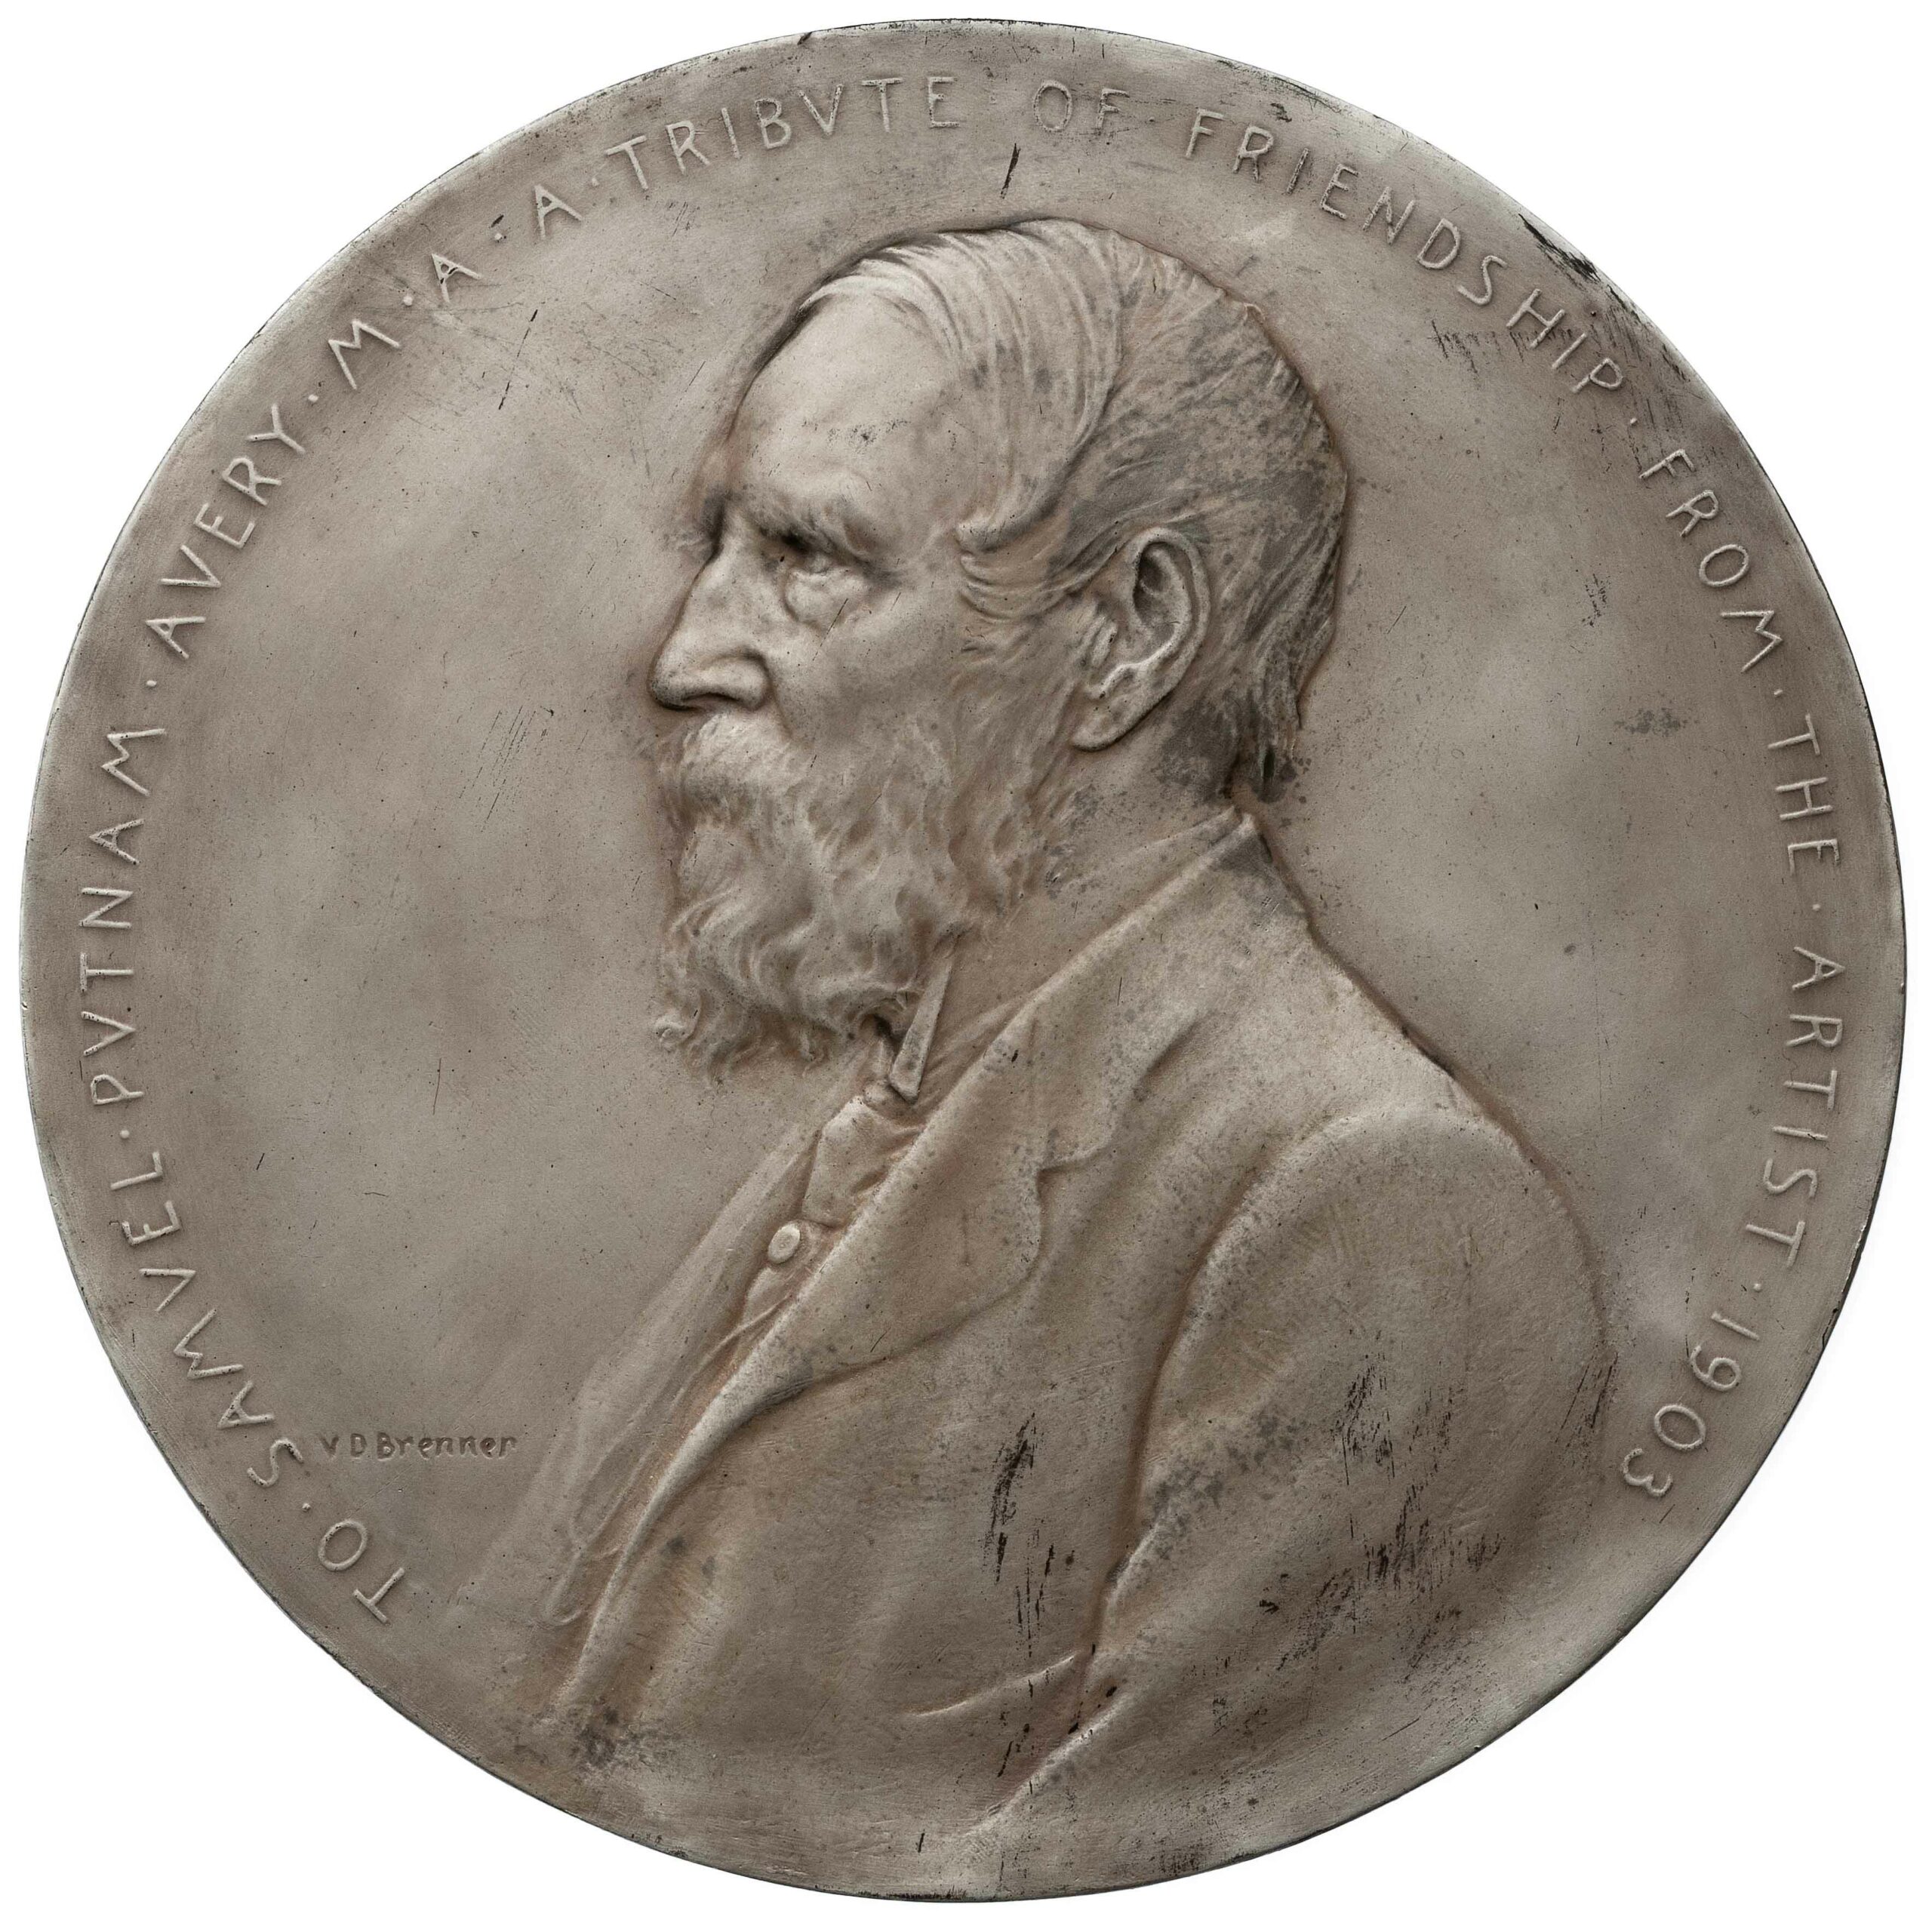 Hahlo-101, Samuel Putnam Avery, Esq. medallion